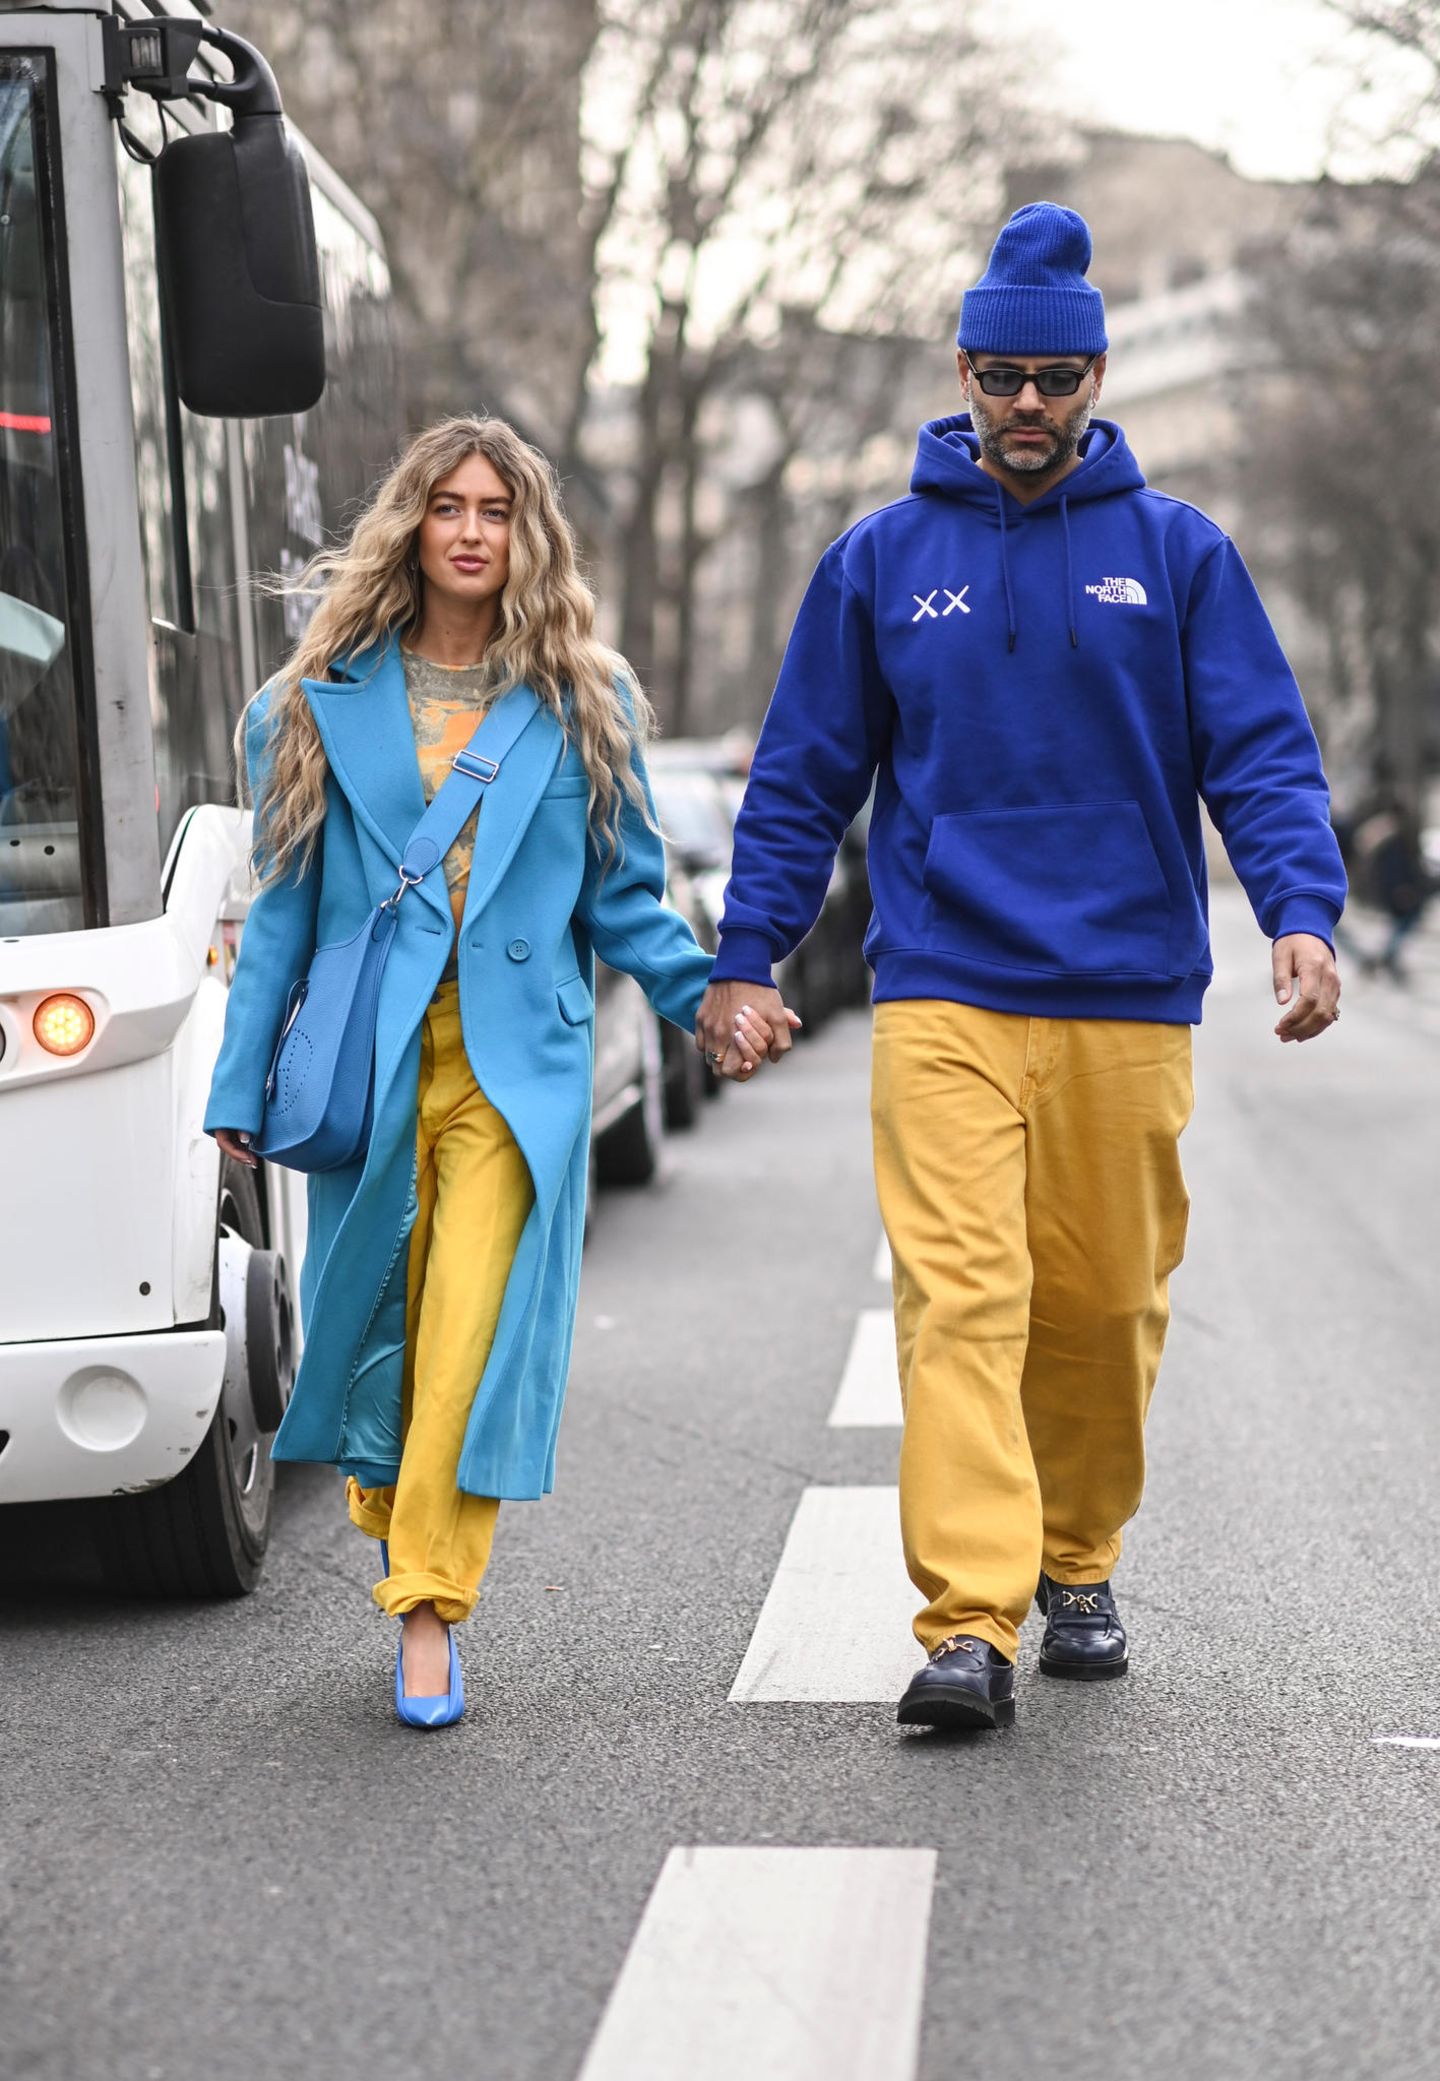 Die Pariser Fashion Week ist in vollem Gange und auch die politischen Schwierigkeiten bleiben ein wichtiges Thema. So präsentieren sich Emili Sindlev und ihr Partner Mads Emil in den Farben der ukrainischen Flagge. Damit zeigen sich die beiden solidarisch und setzen ein klares Statement mit ihrer Kleidung. 